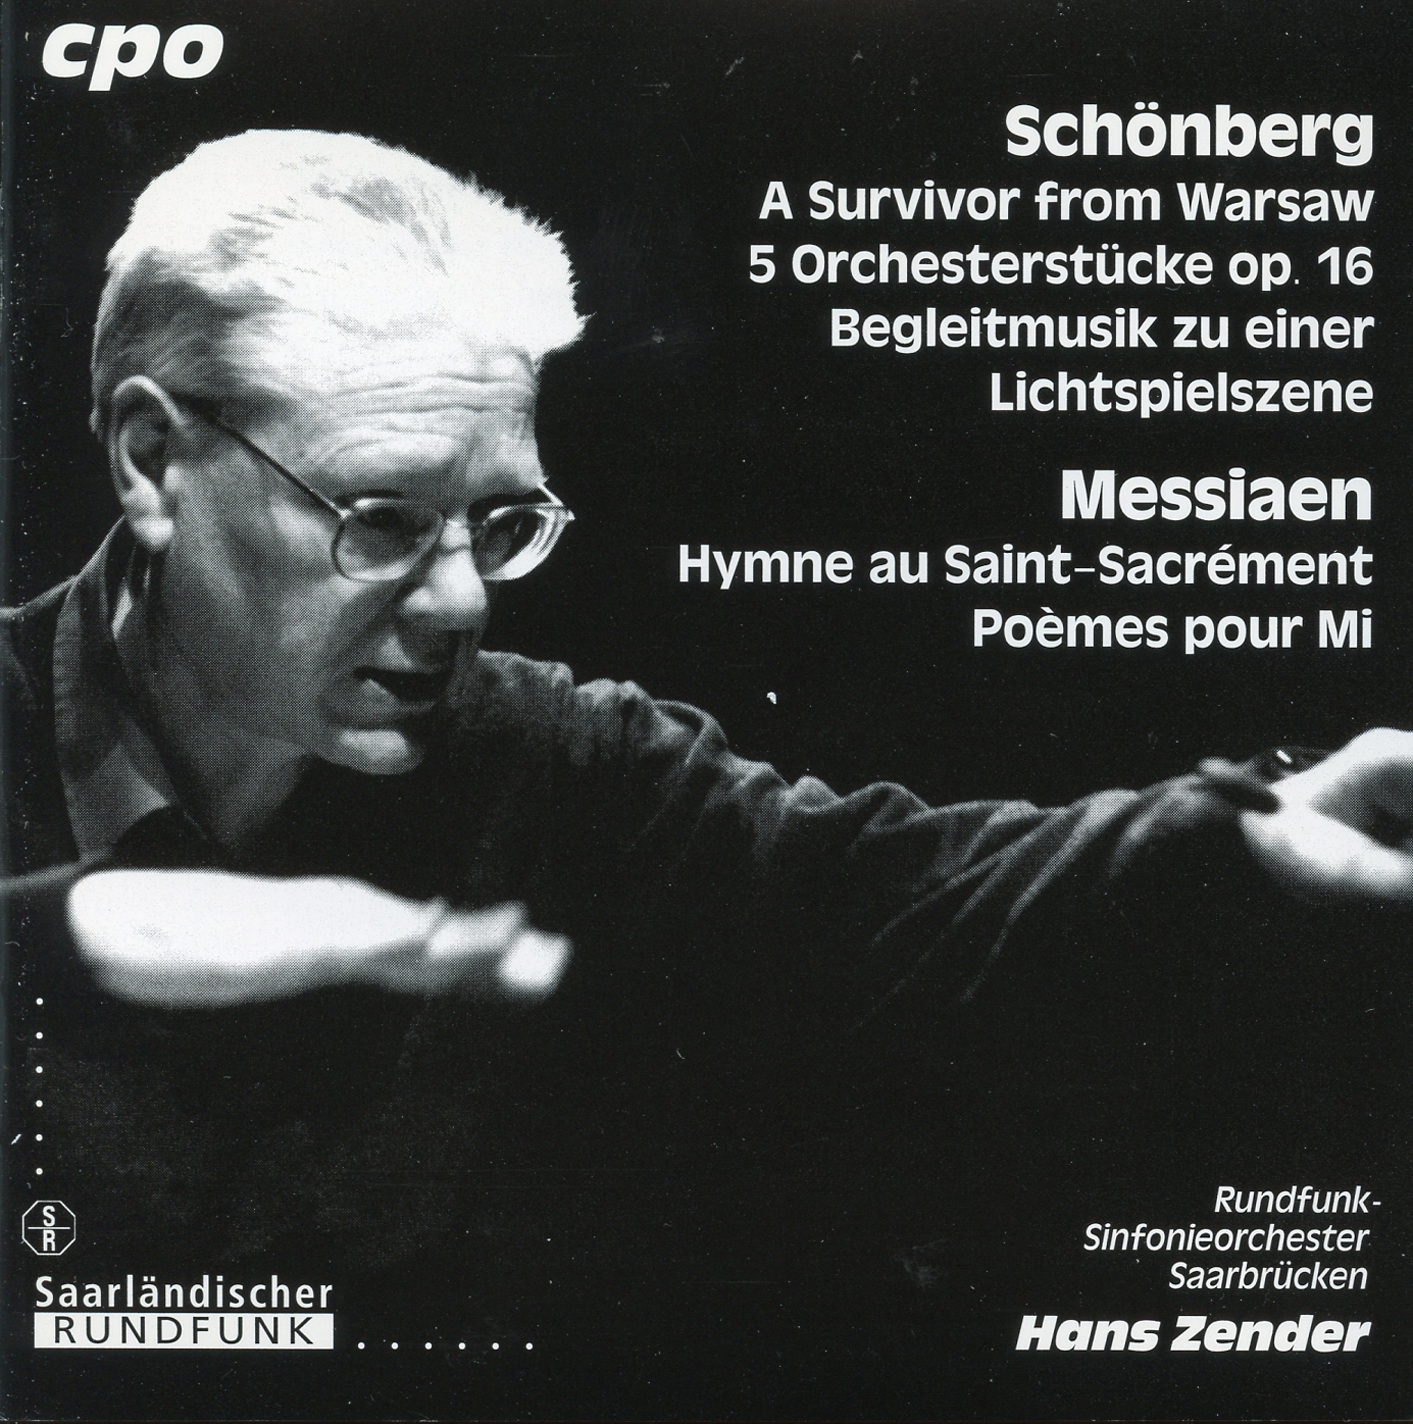 Hans Zender sur la pochette du disque Schoenberg / Messiaen de CPO